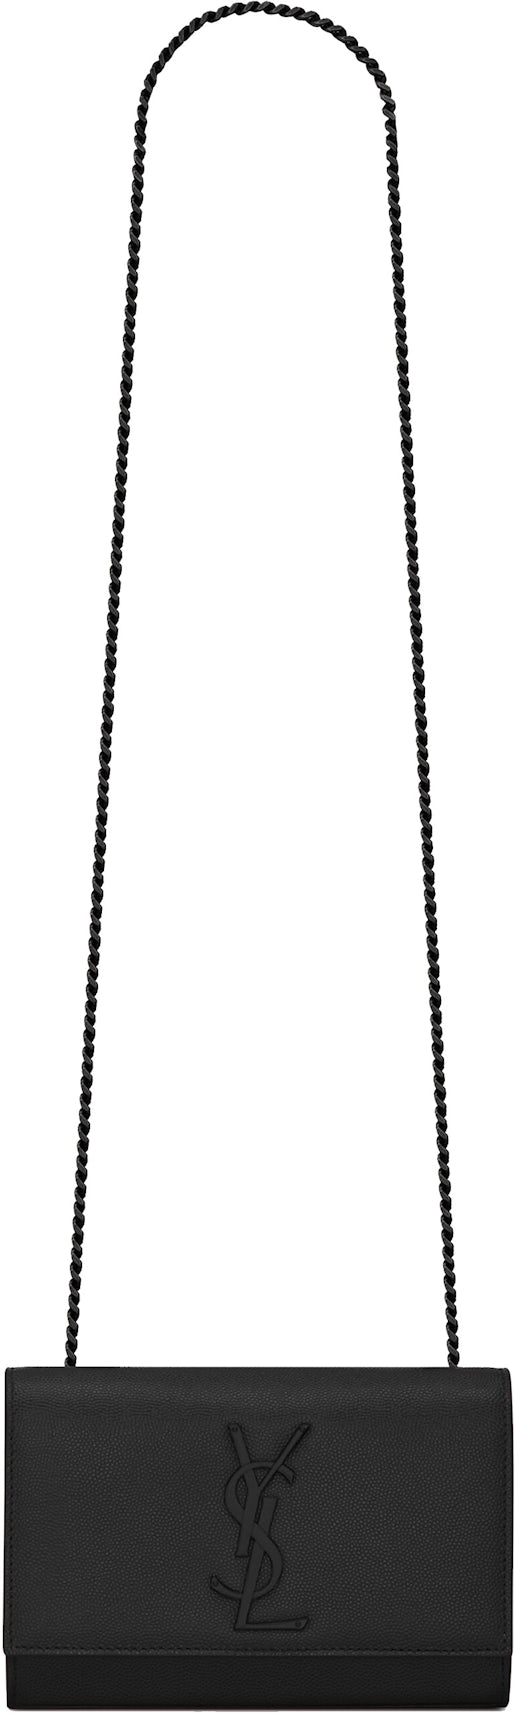 Saint Laurent Kate Small YSL Grain de Poudre Chain Shoulder Bag